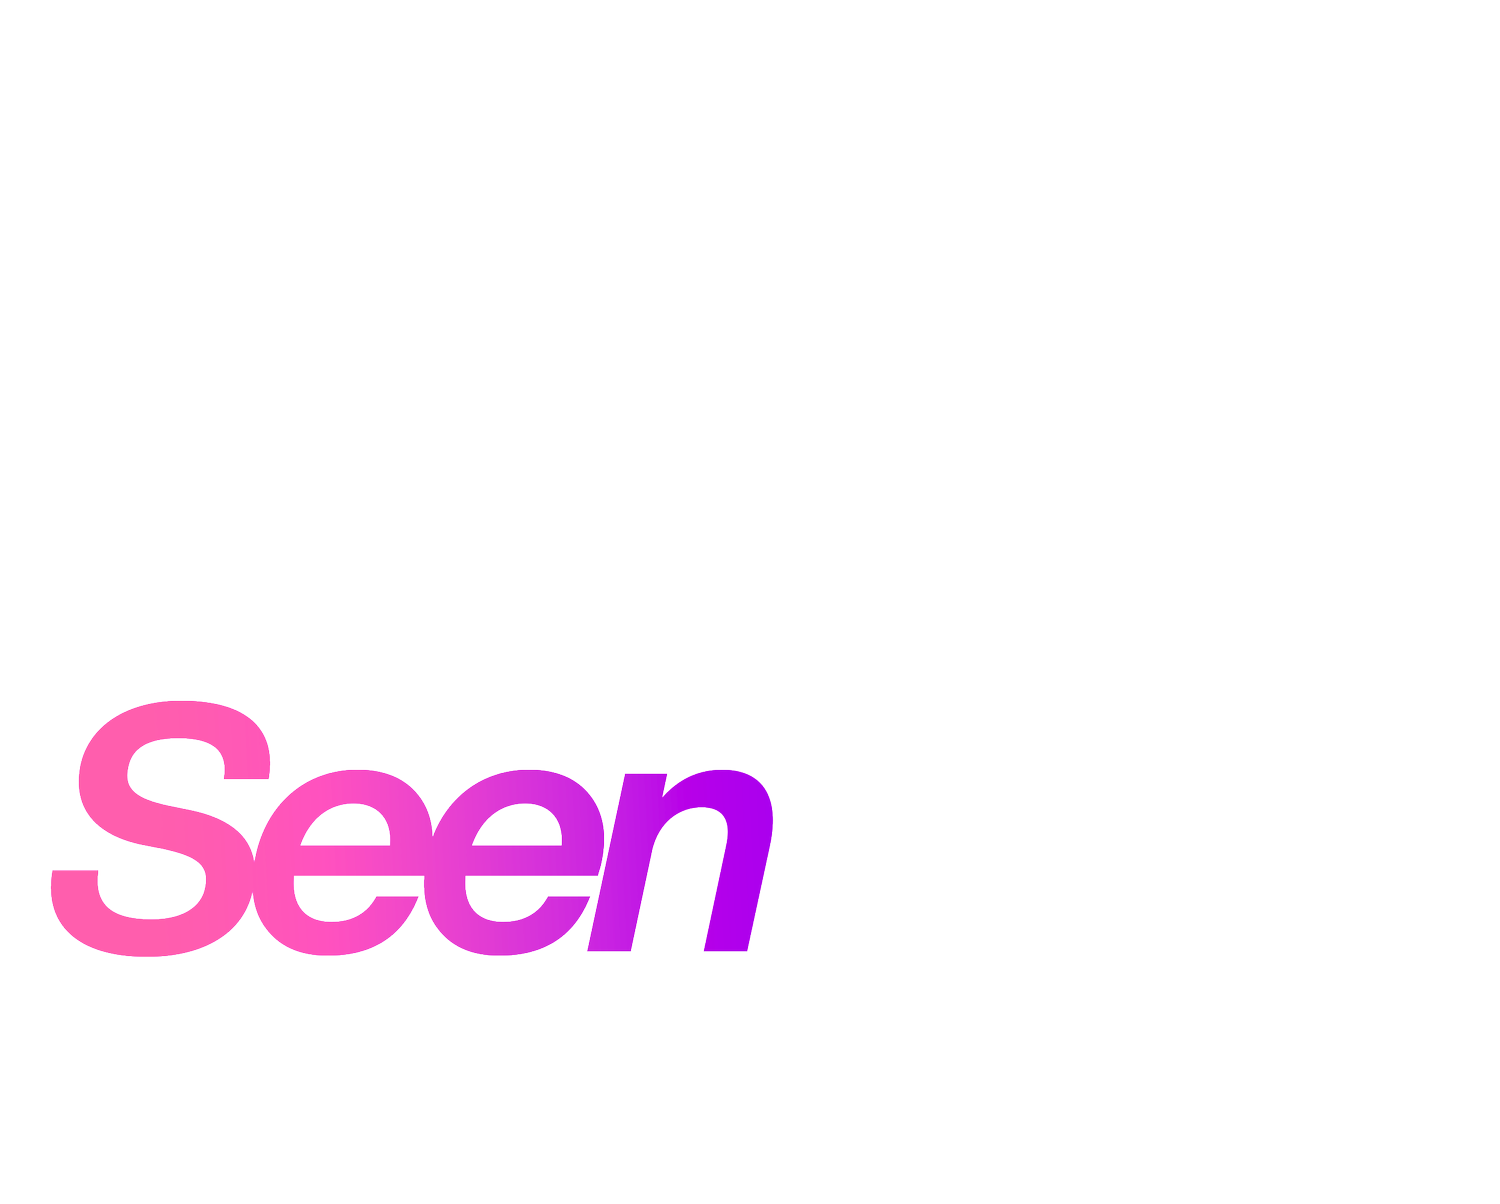  Castro Street Seen